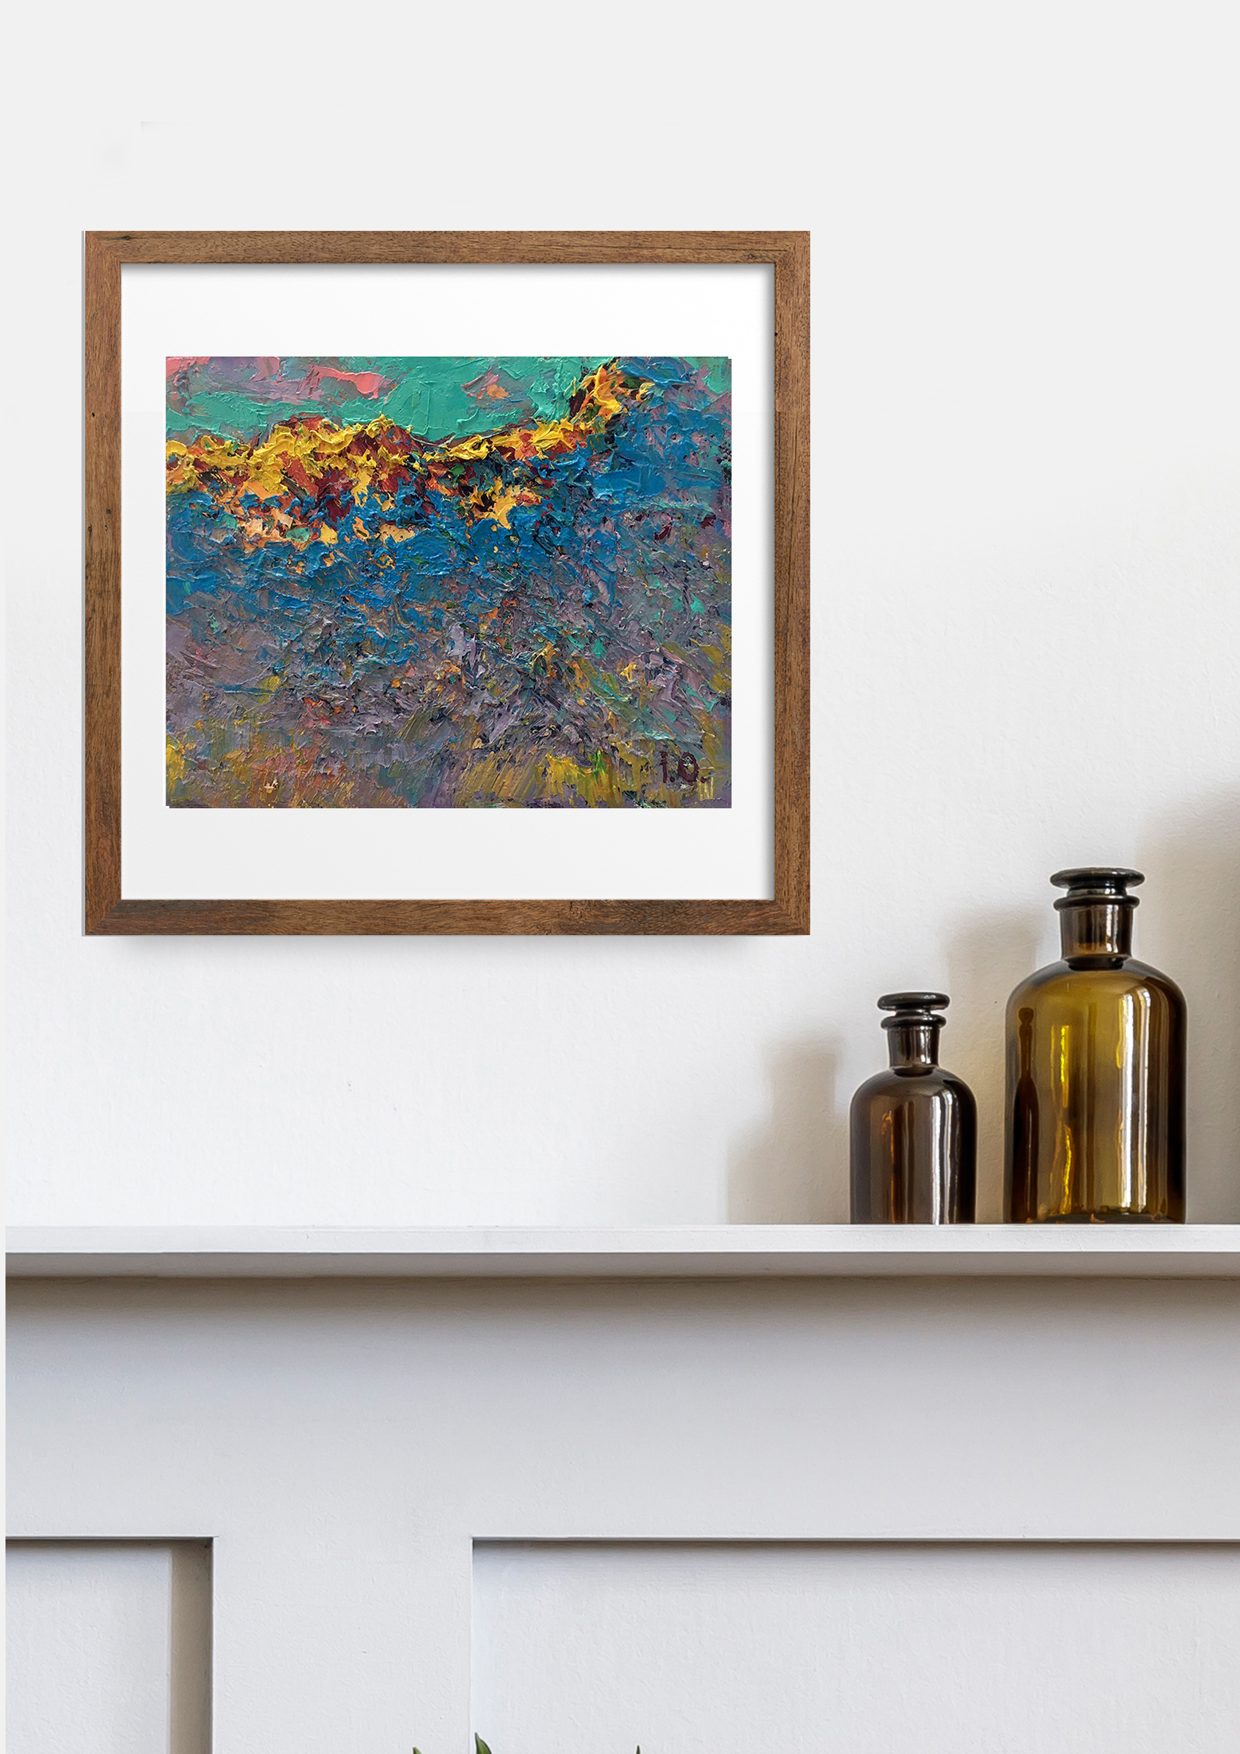 Ivanyuk's "The Last Ray" oil artwork, evoking melancholic sunset hues.